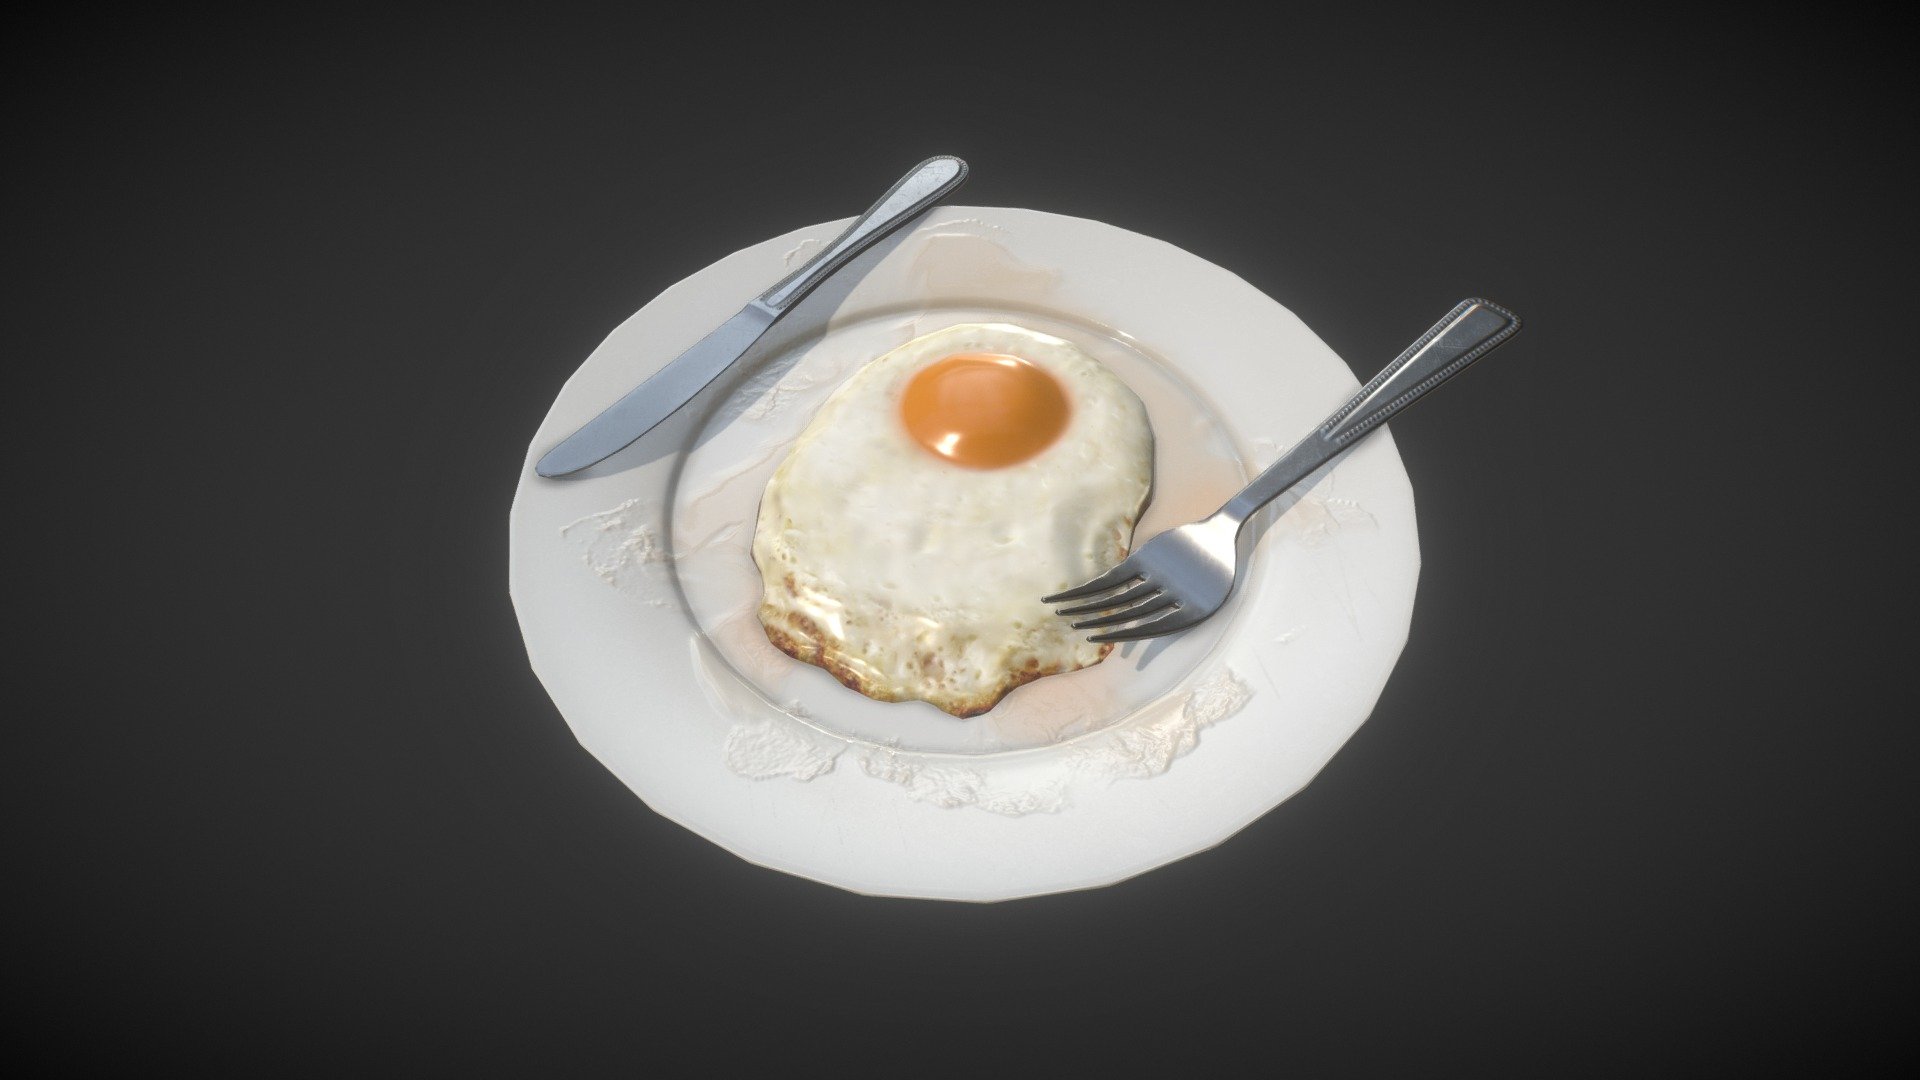 Lowpoly game ready model - Egg Fry - 3D model by J.Seok Lee (@sonaki82) 3d model